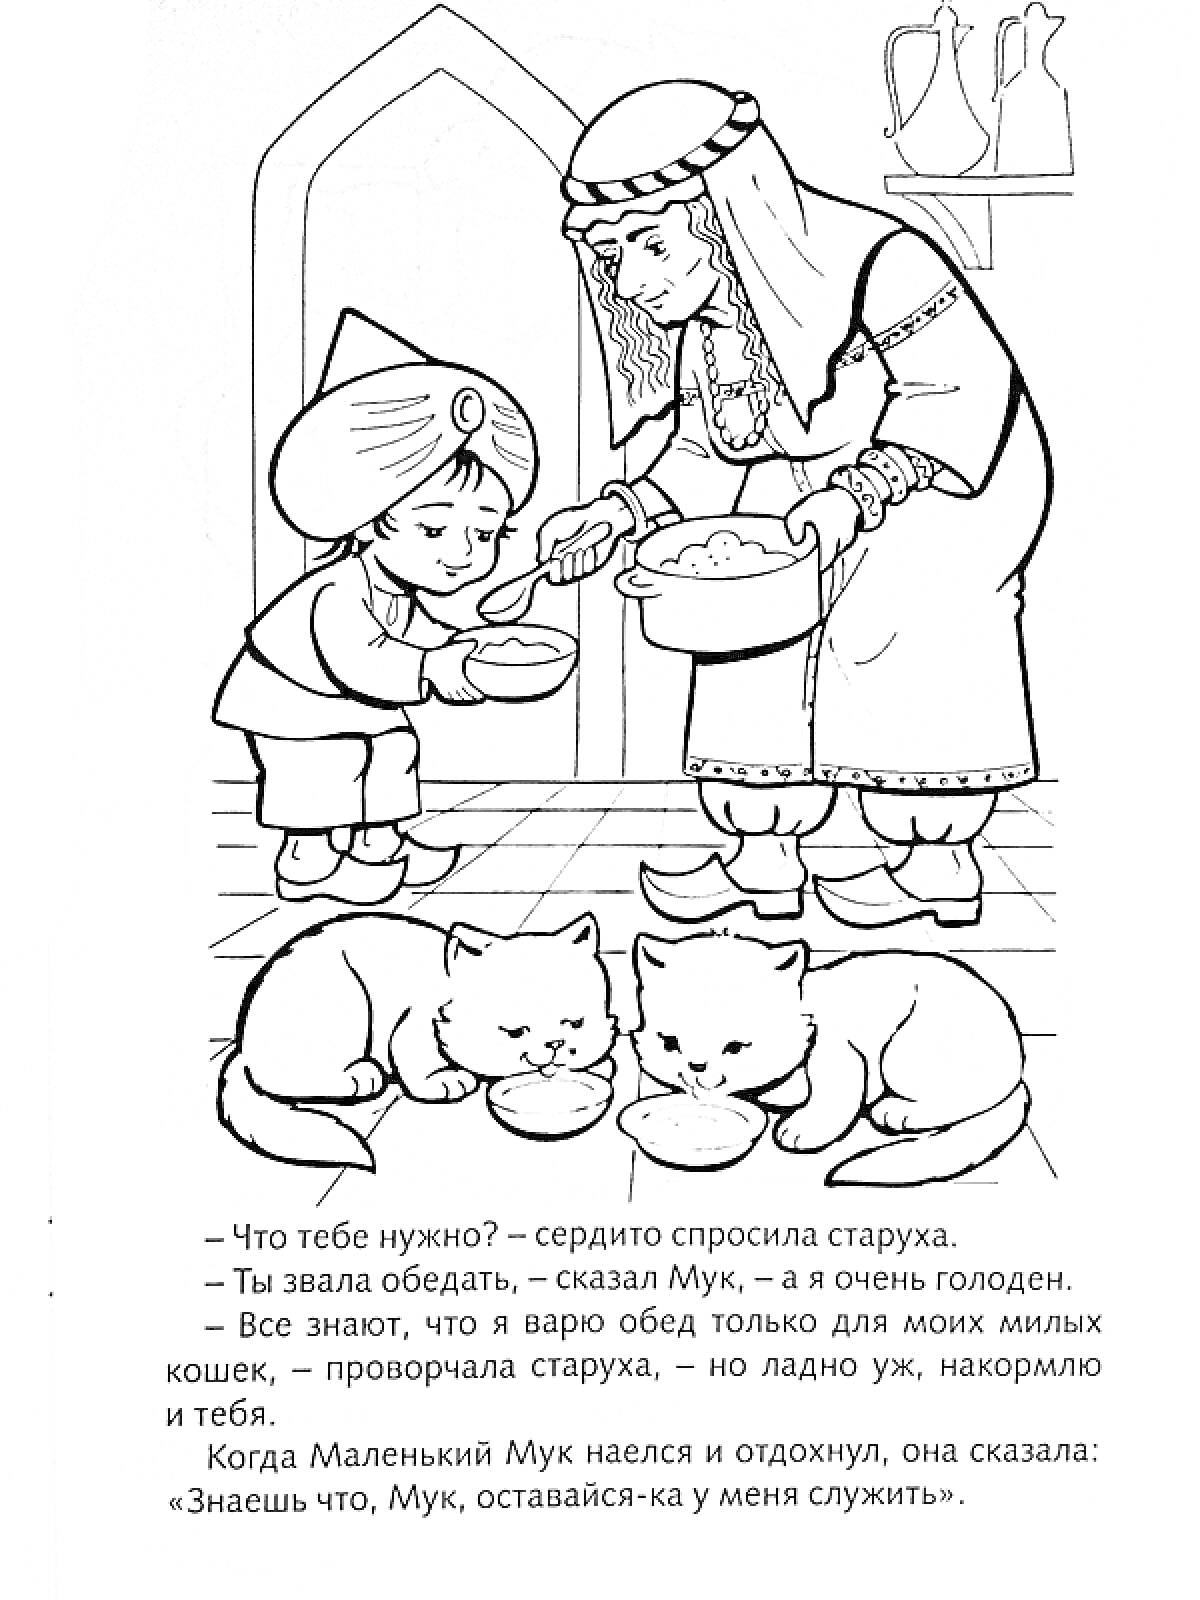 Раскраска пожилая женщина, мальчик Мук и кошки, кормящиеся из мисок